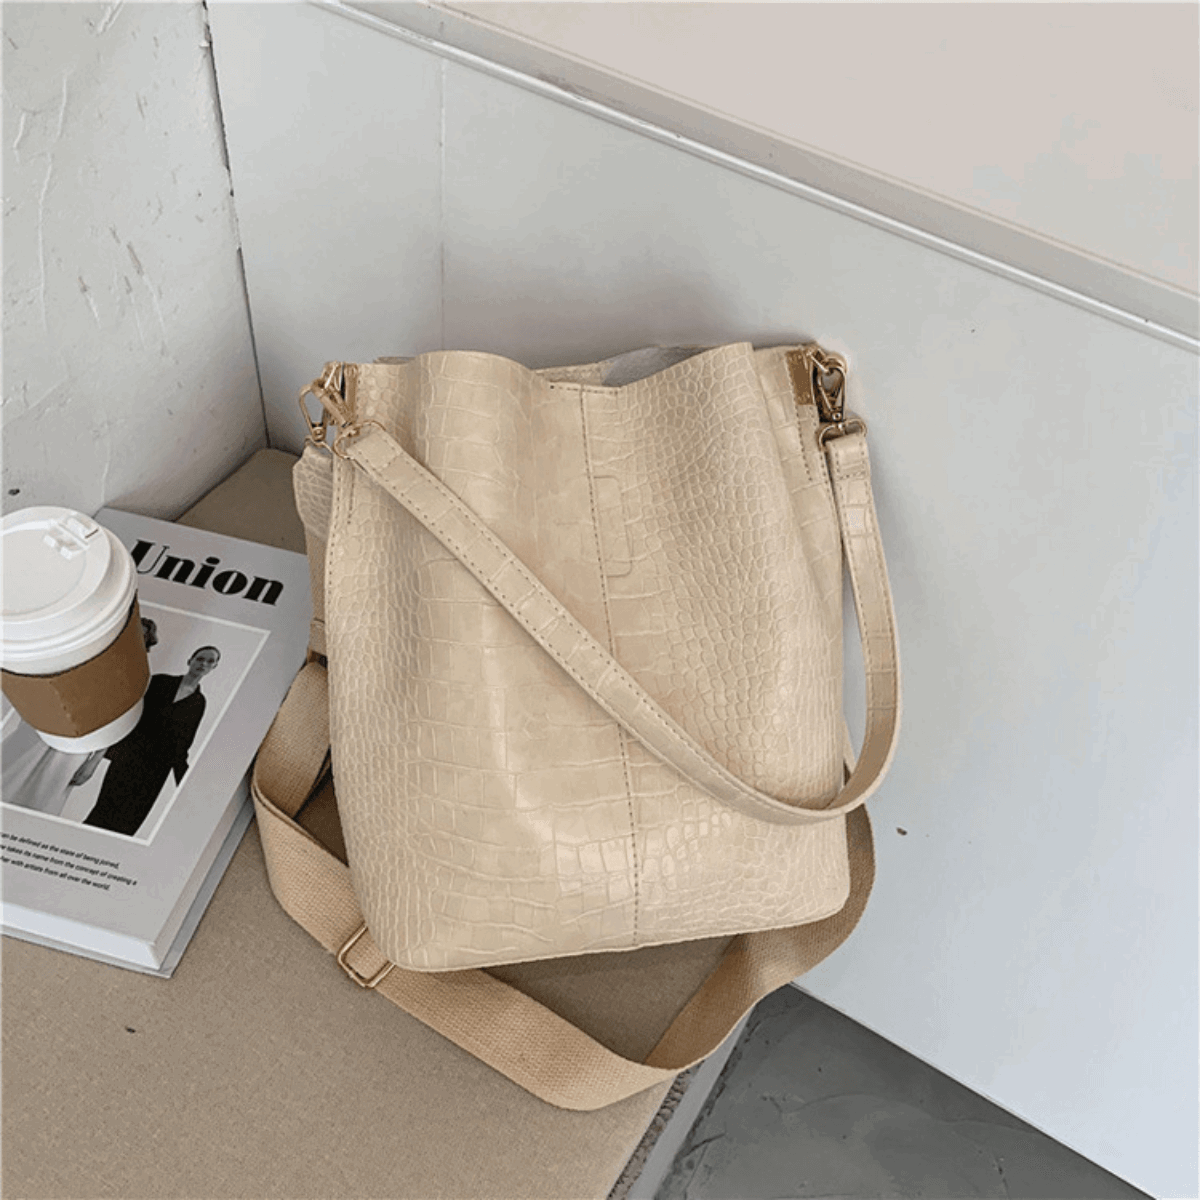 Buy MKF Set Hobo Bag for Women & Wristlet Wallet – PU Leather Designer  Handbag Purse – Shoulder Strap Lady Pocketbook Mustard at Amazon.in